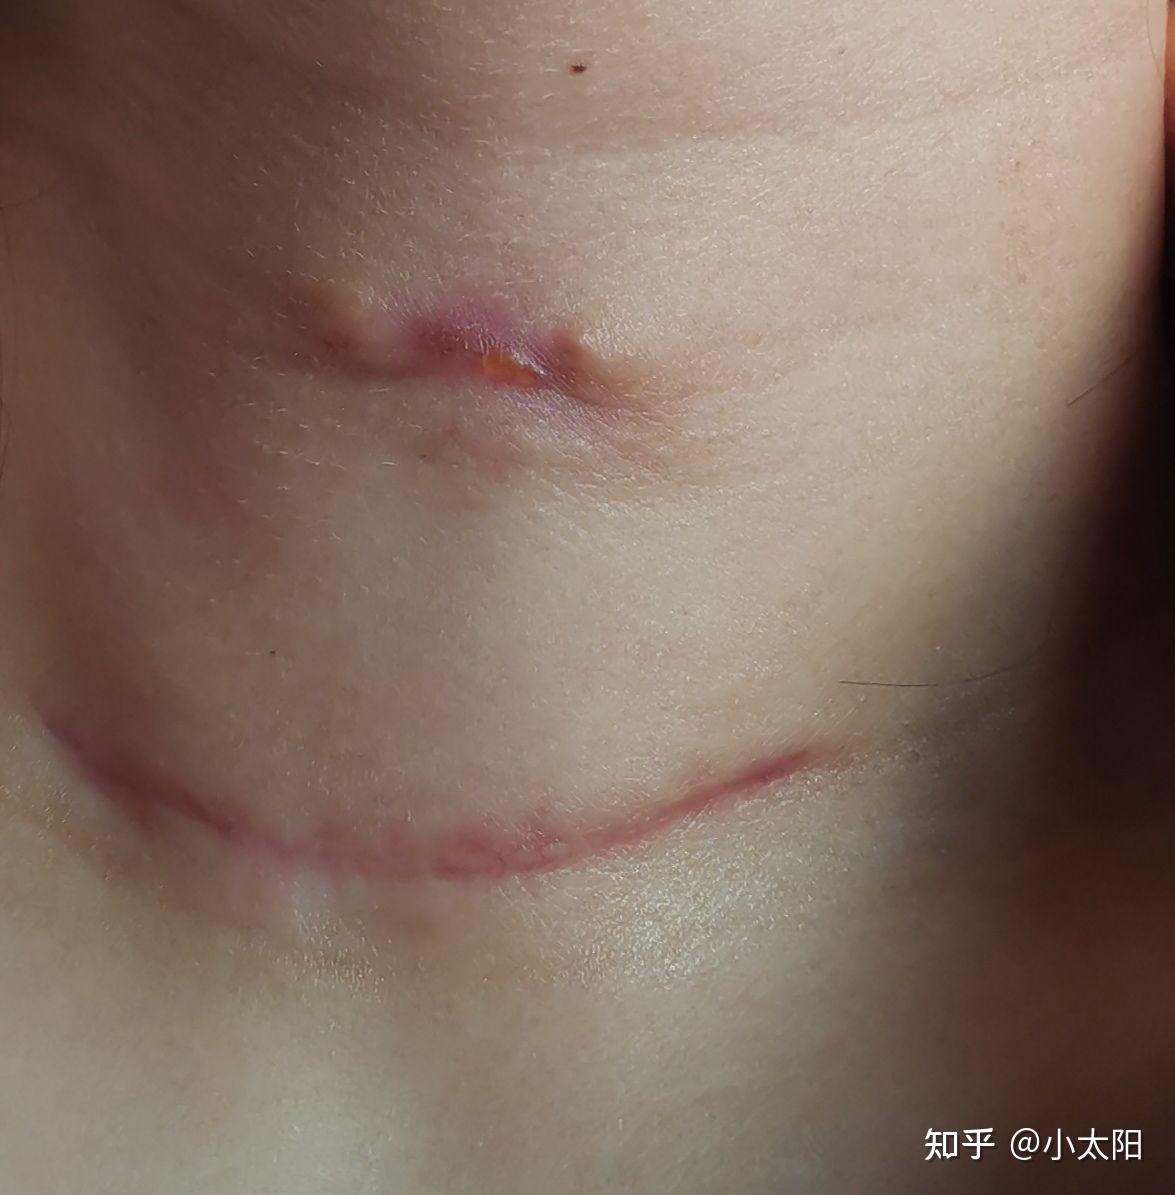 甲状腺乳头状癌(左边半切)疤痕恢复情况 